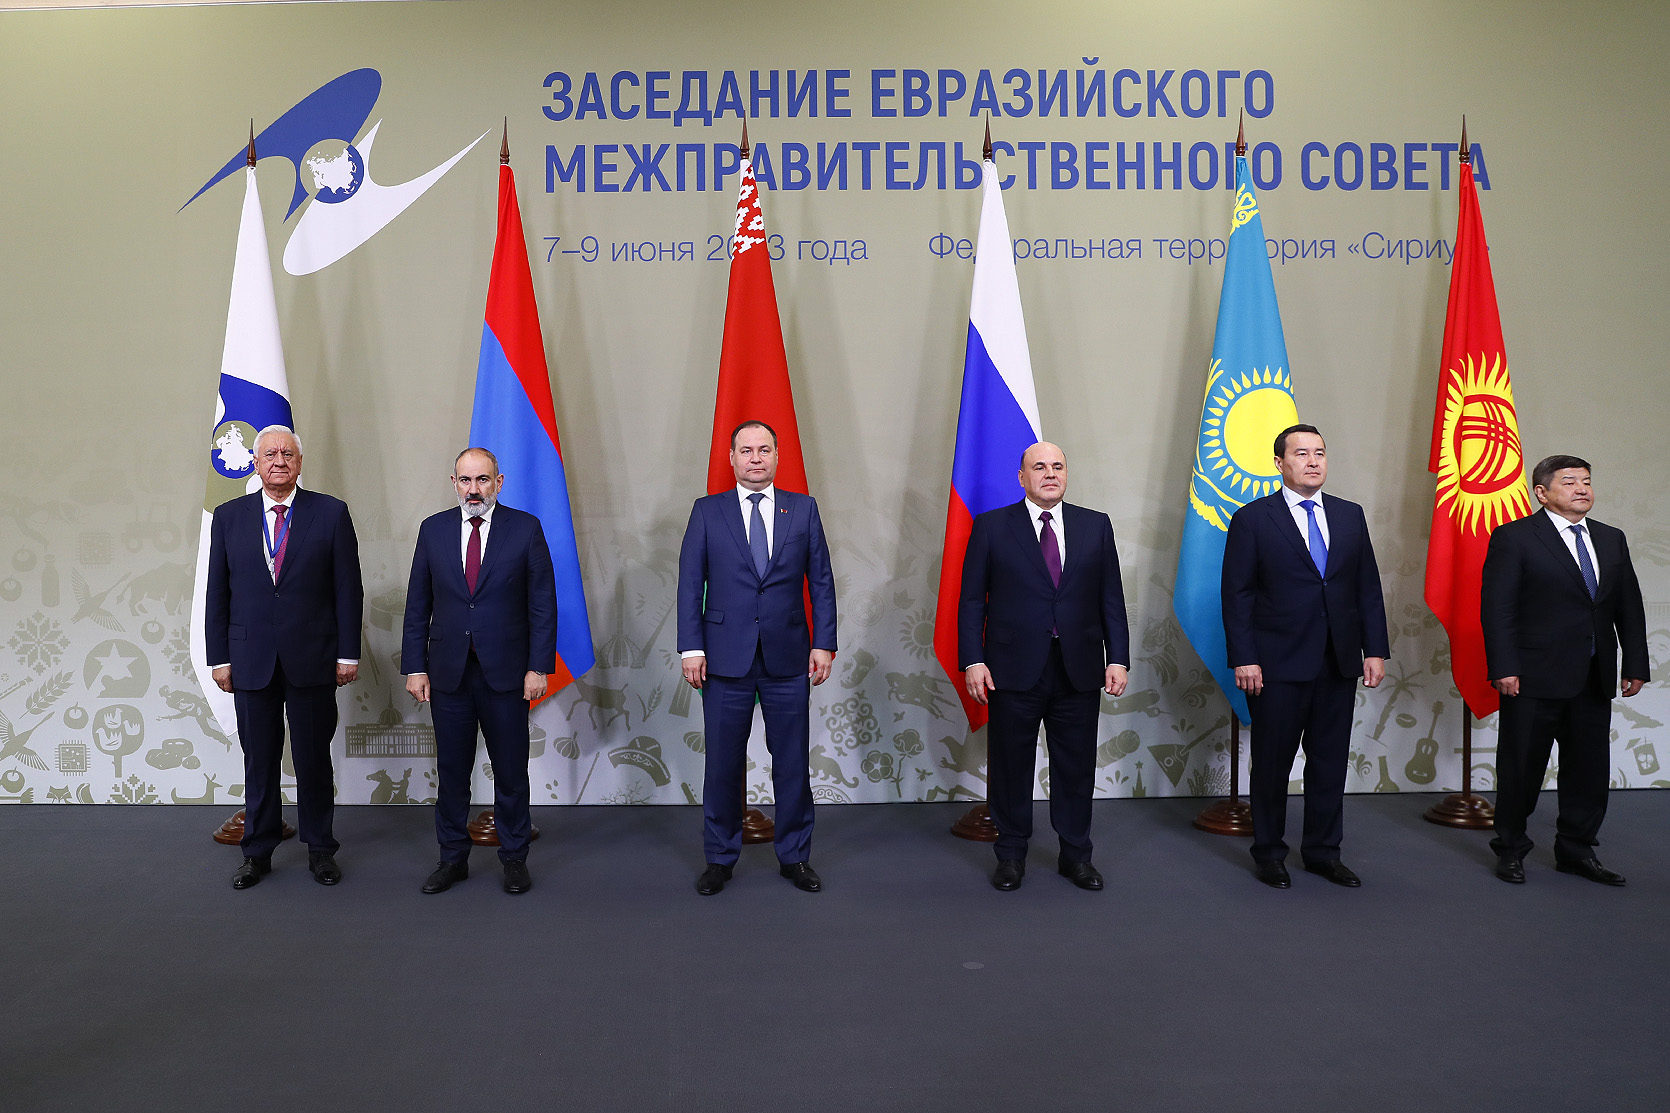  Заседание Евразийского межправительственного совета пройдет в Цахкадзоре